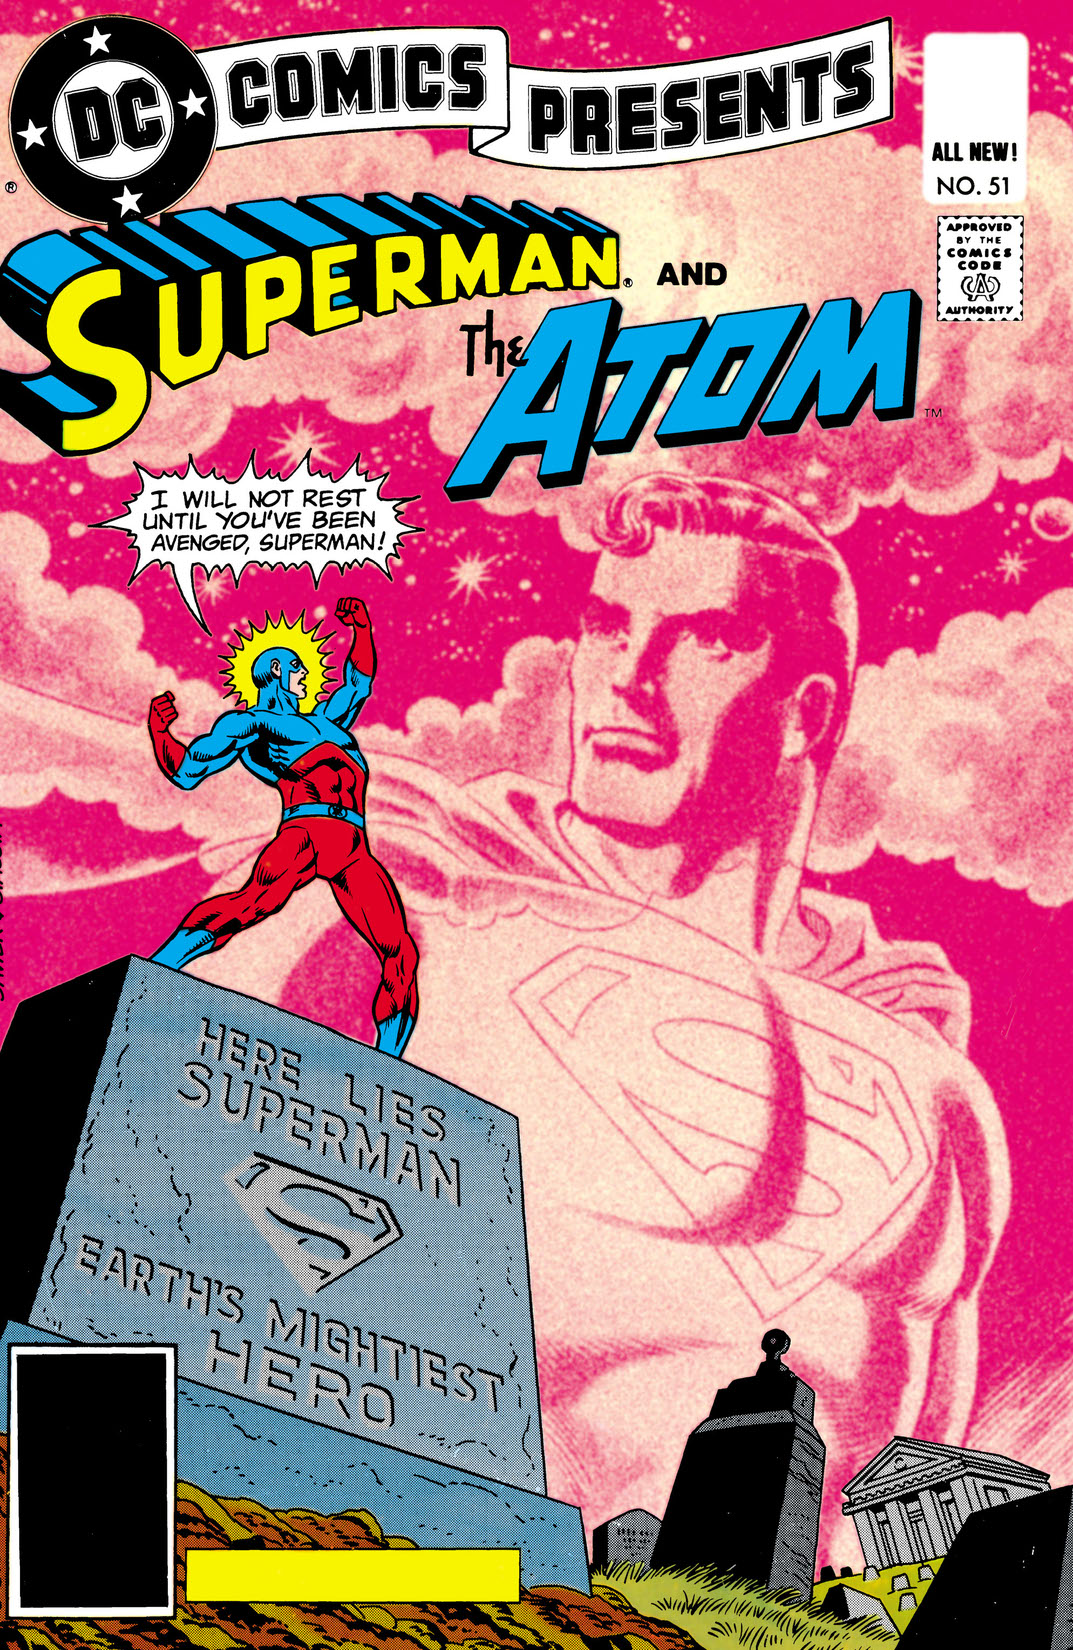 DC Comics Presents (1978-1986) #51 preview images